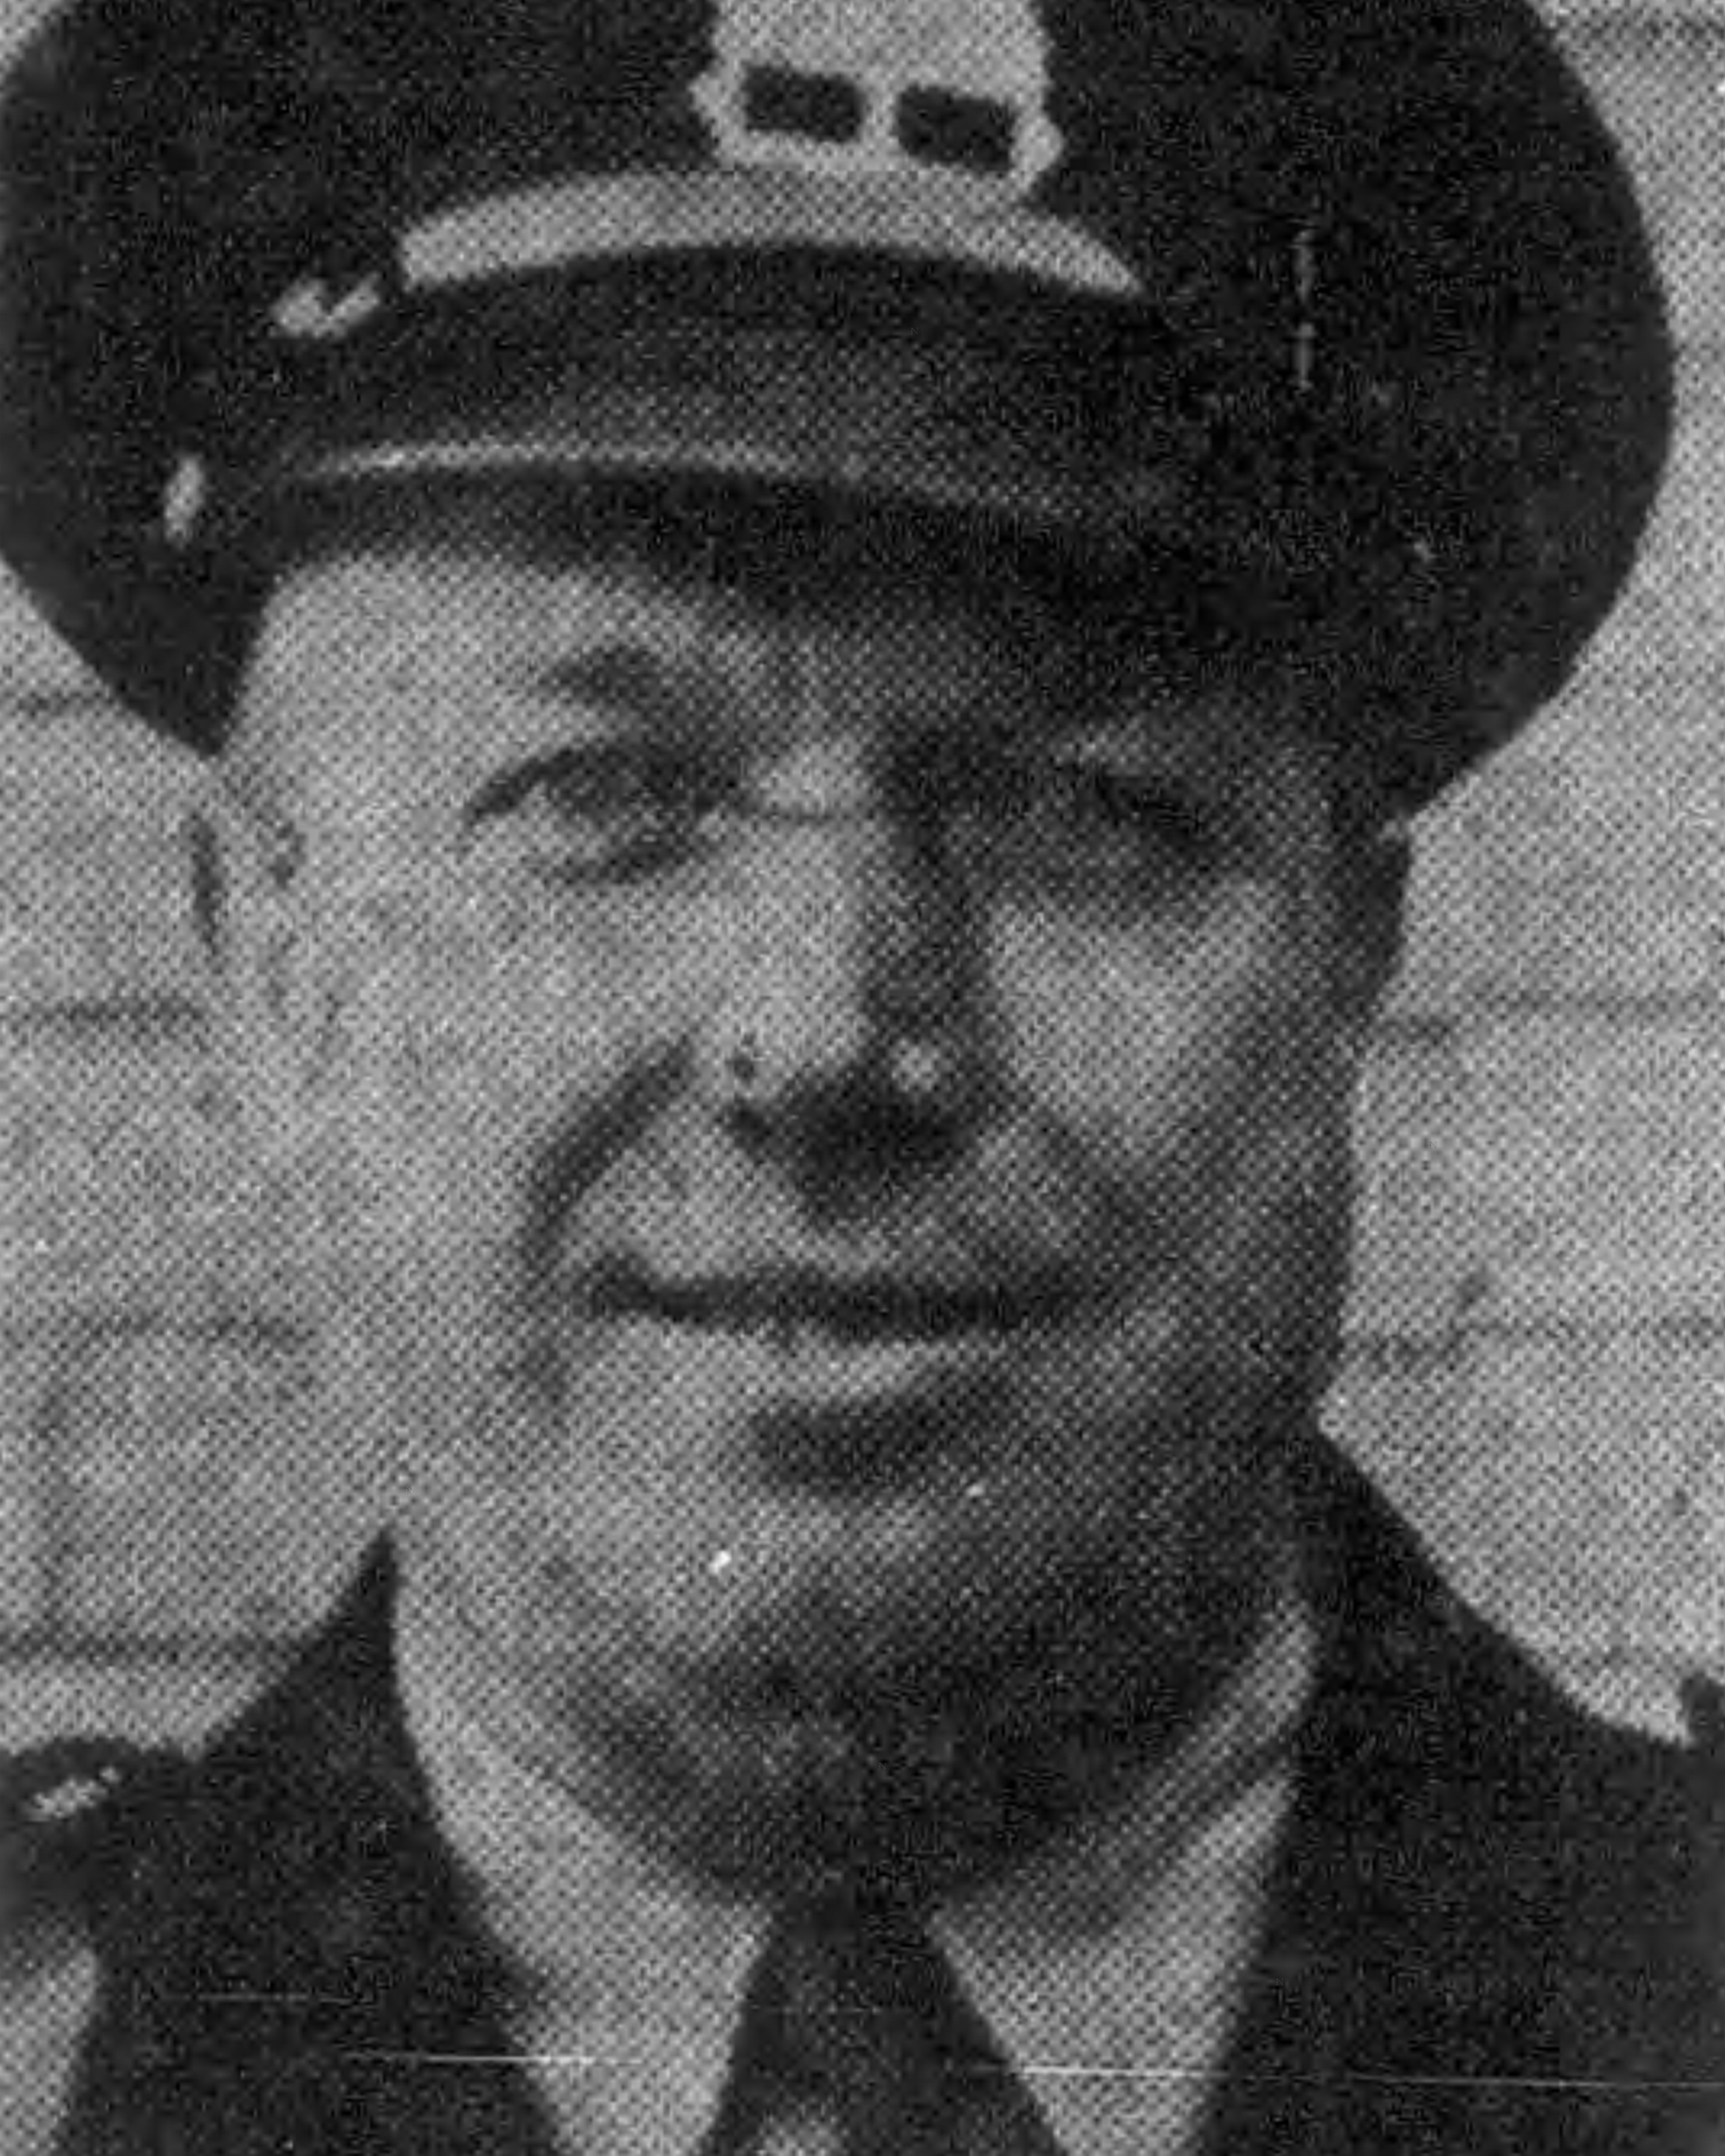 Patrolman Stanley J. 